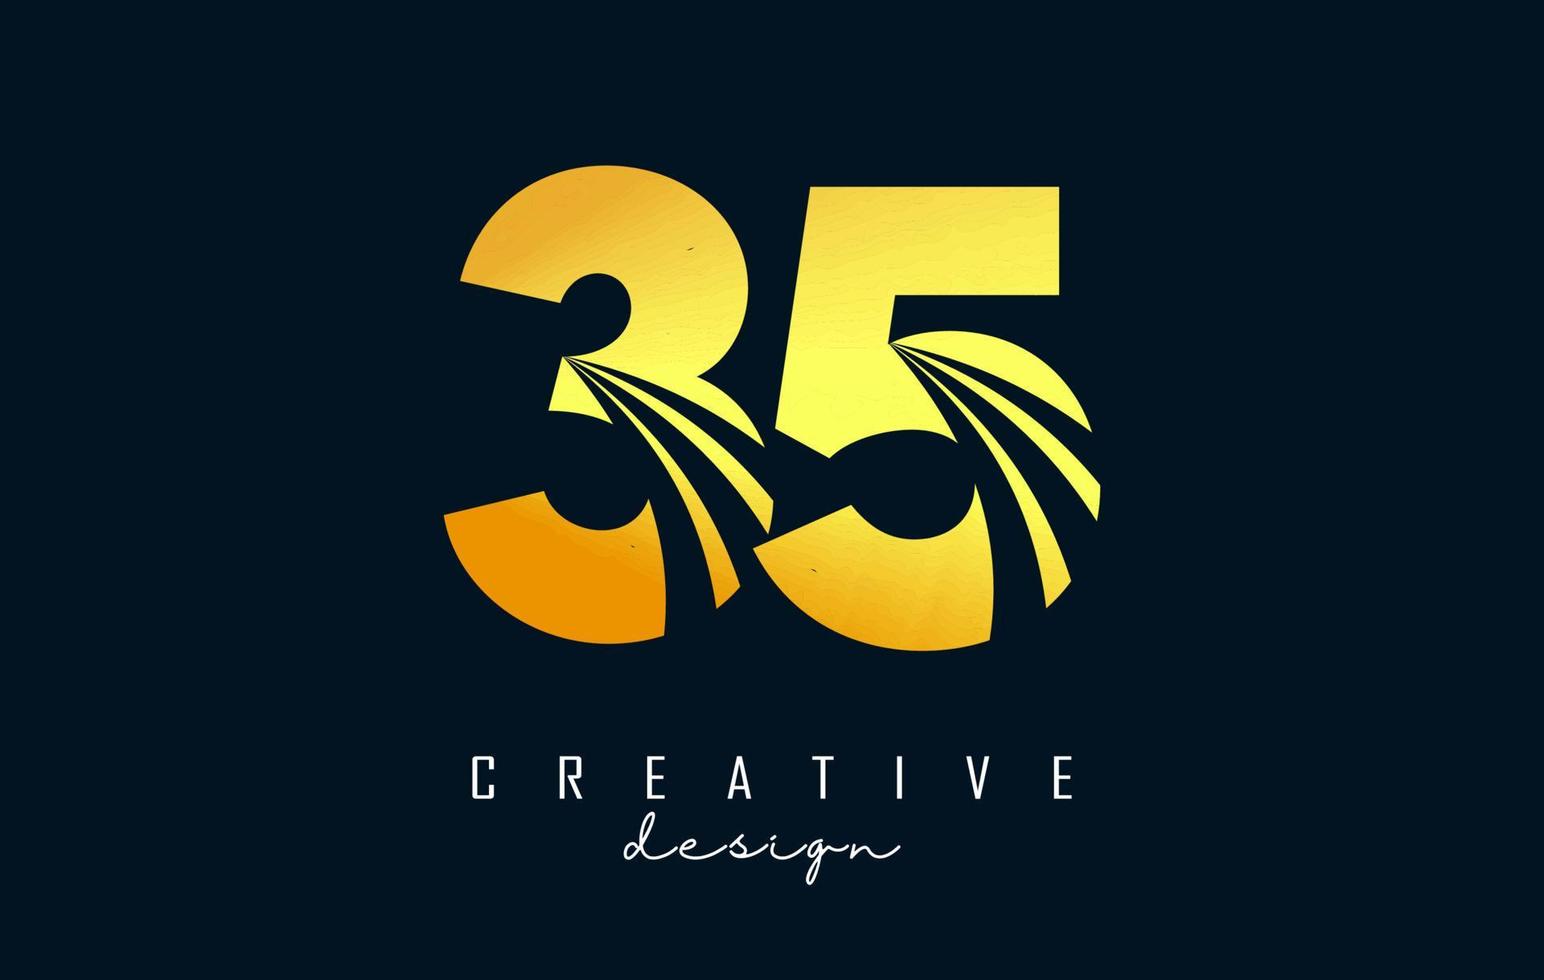 logotipo dorado creativo número 35 3 5 con líneas principales y diseño de concepto de carretera. número con diseño geométrico. vector